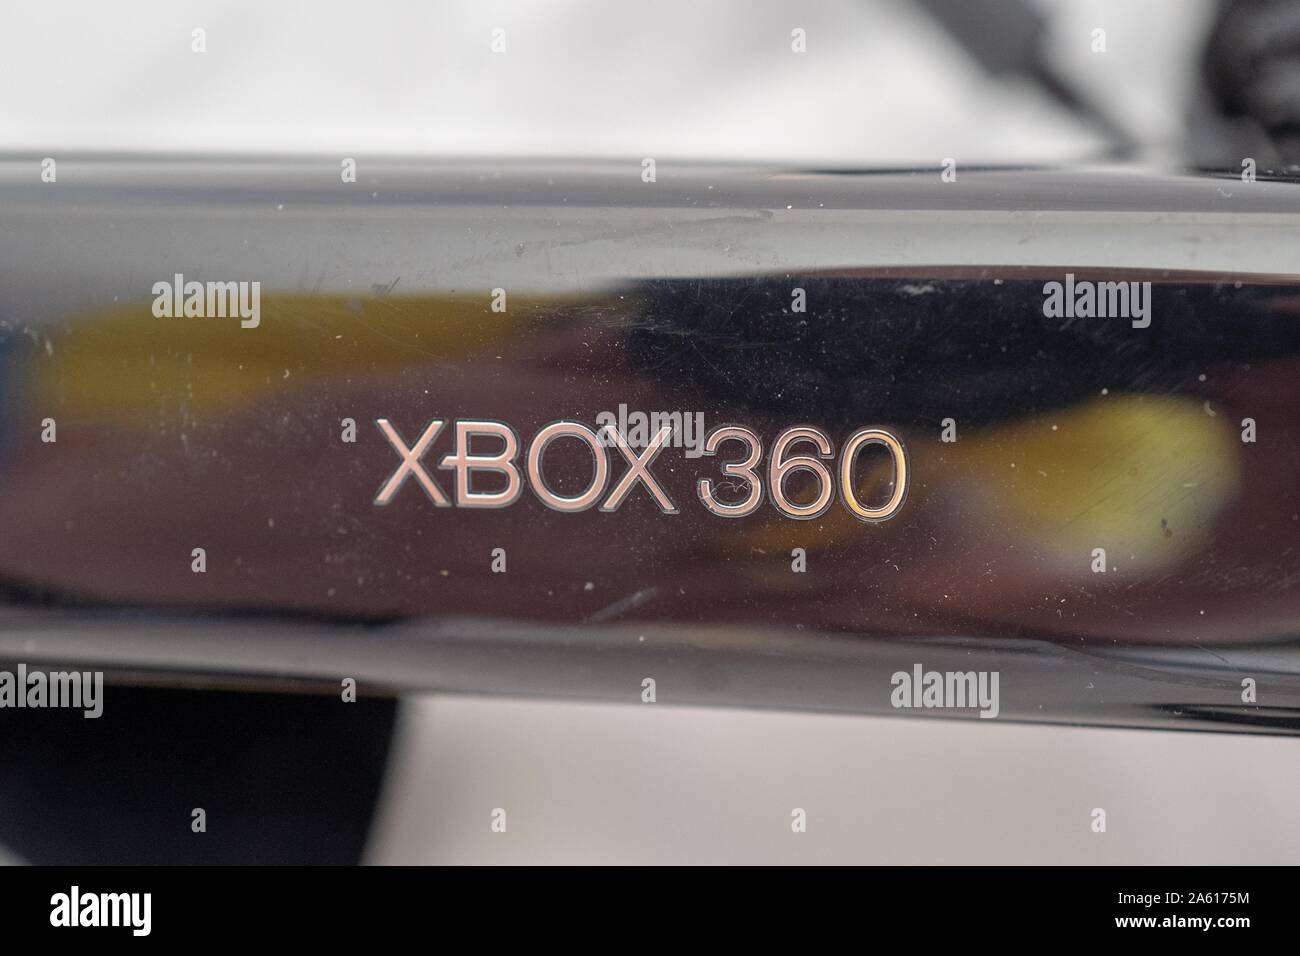 Gros plan du logo sur la manette de jeu de détection de mouvement Xbox 360 Kinect de première génération, une caméra de faible profondeur conçue pour permettre le contrôle gestuel des systèmes de jeux vidéo Xbox de Microsoft, vers 2010, sur fond blanc, 27 août 2019. () Banque D'Images